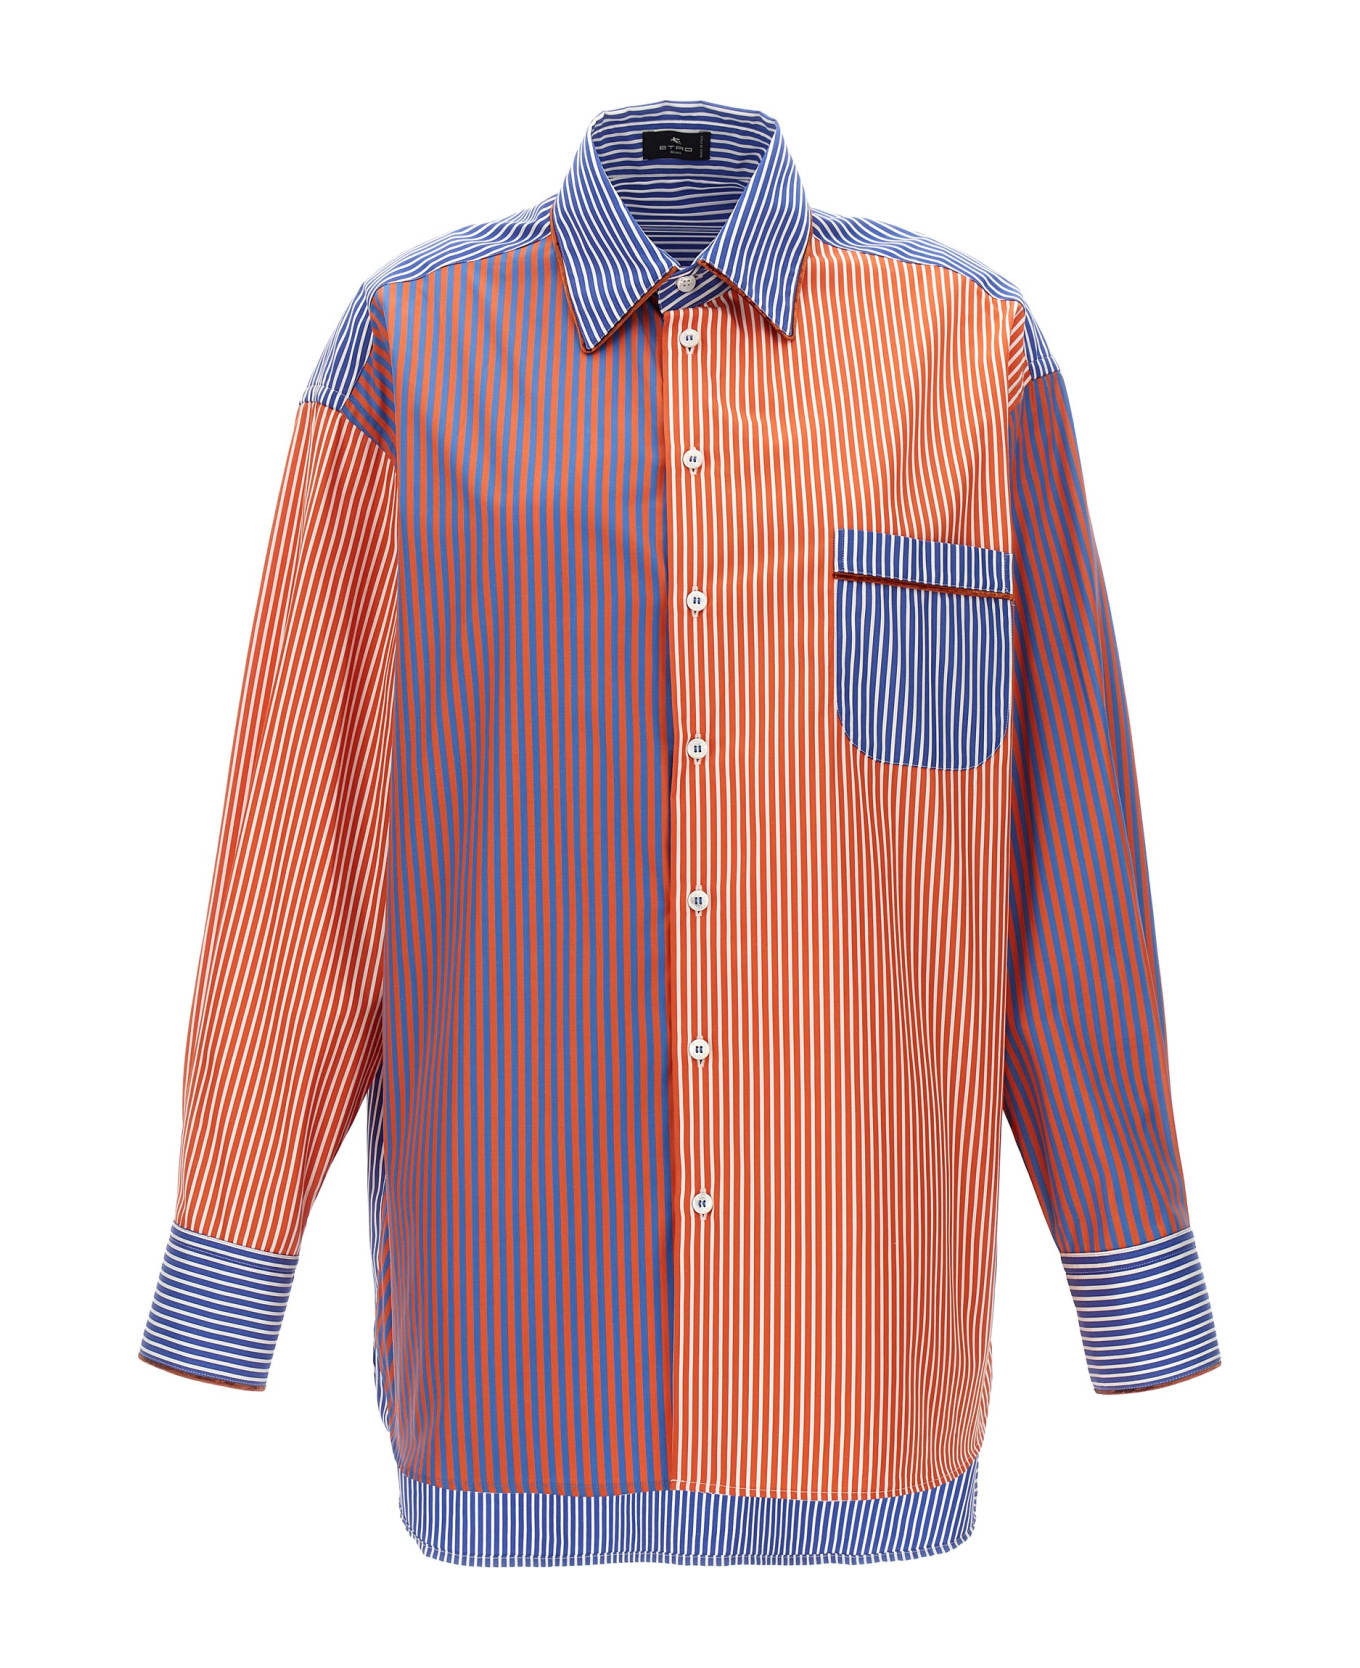 Etro Striped Shirt - Multicolor シャツ